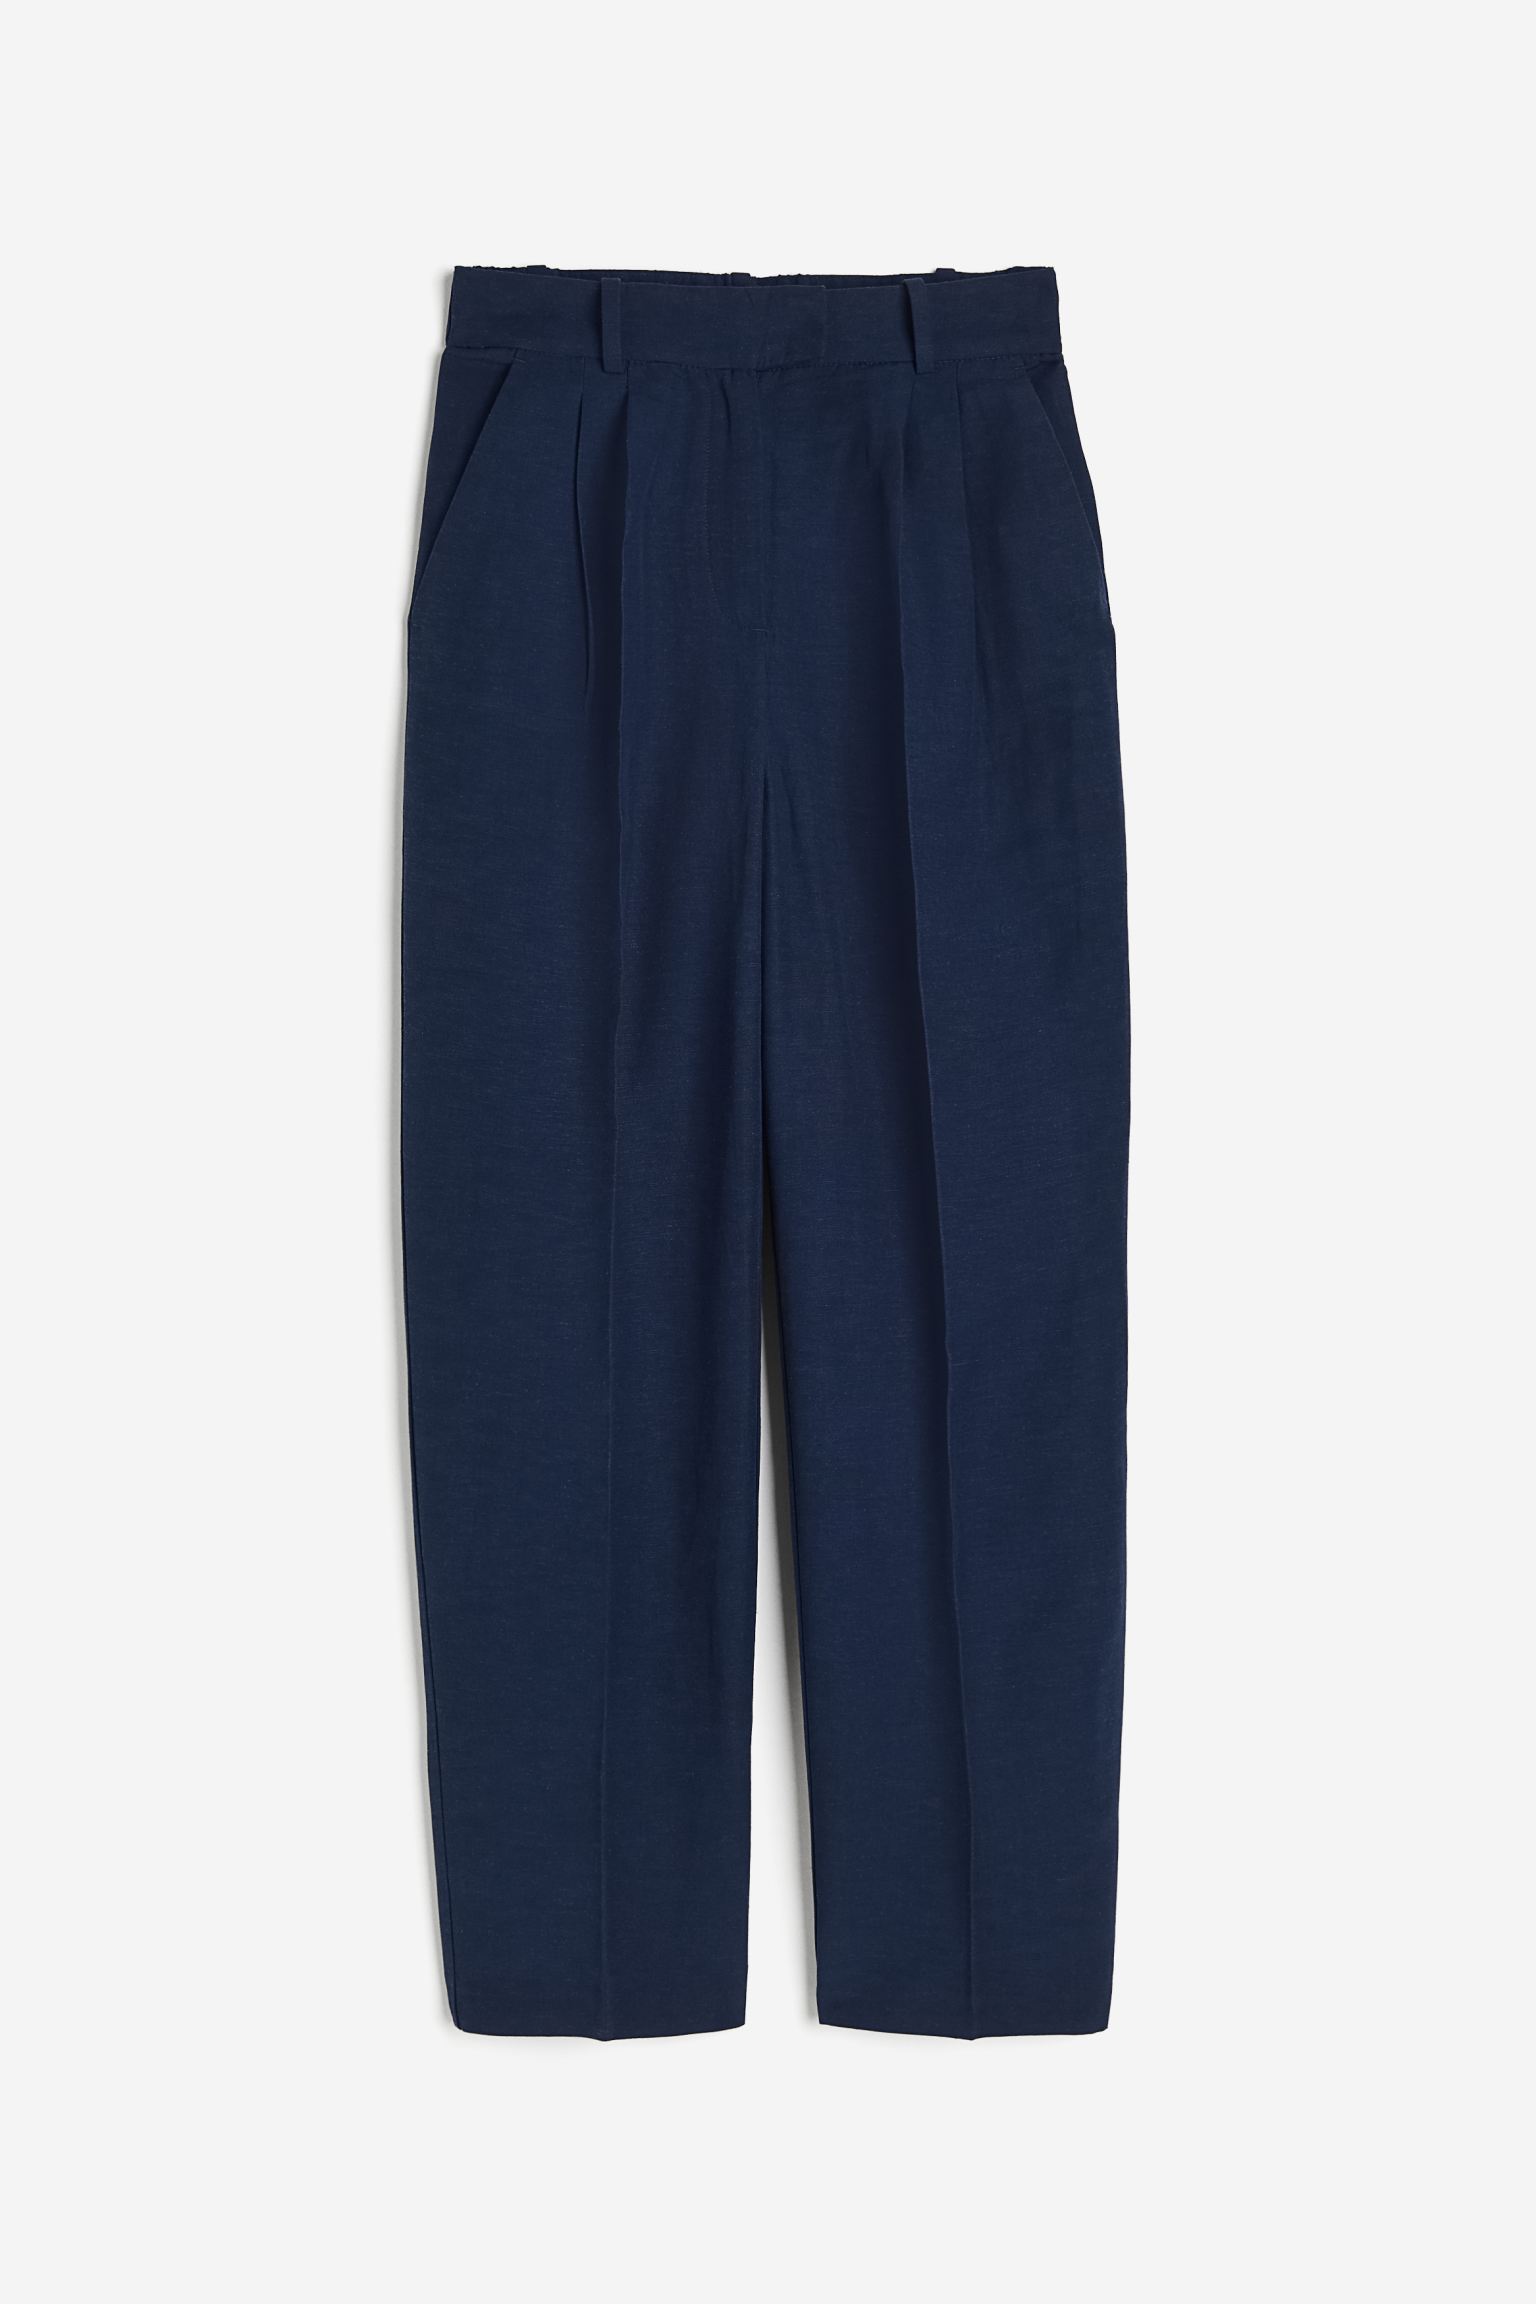 мужские брюки gramicci wool blend tuck tapered синий размер m Брюки H&M Tapered Linen-blend, темно-синий